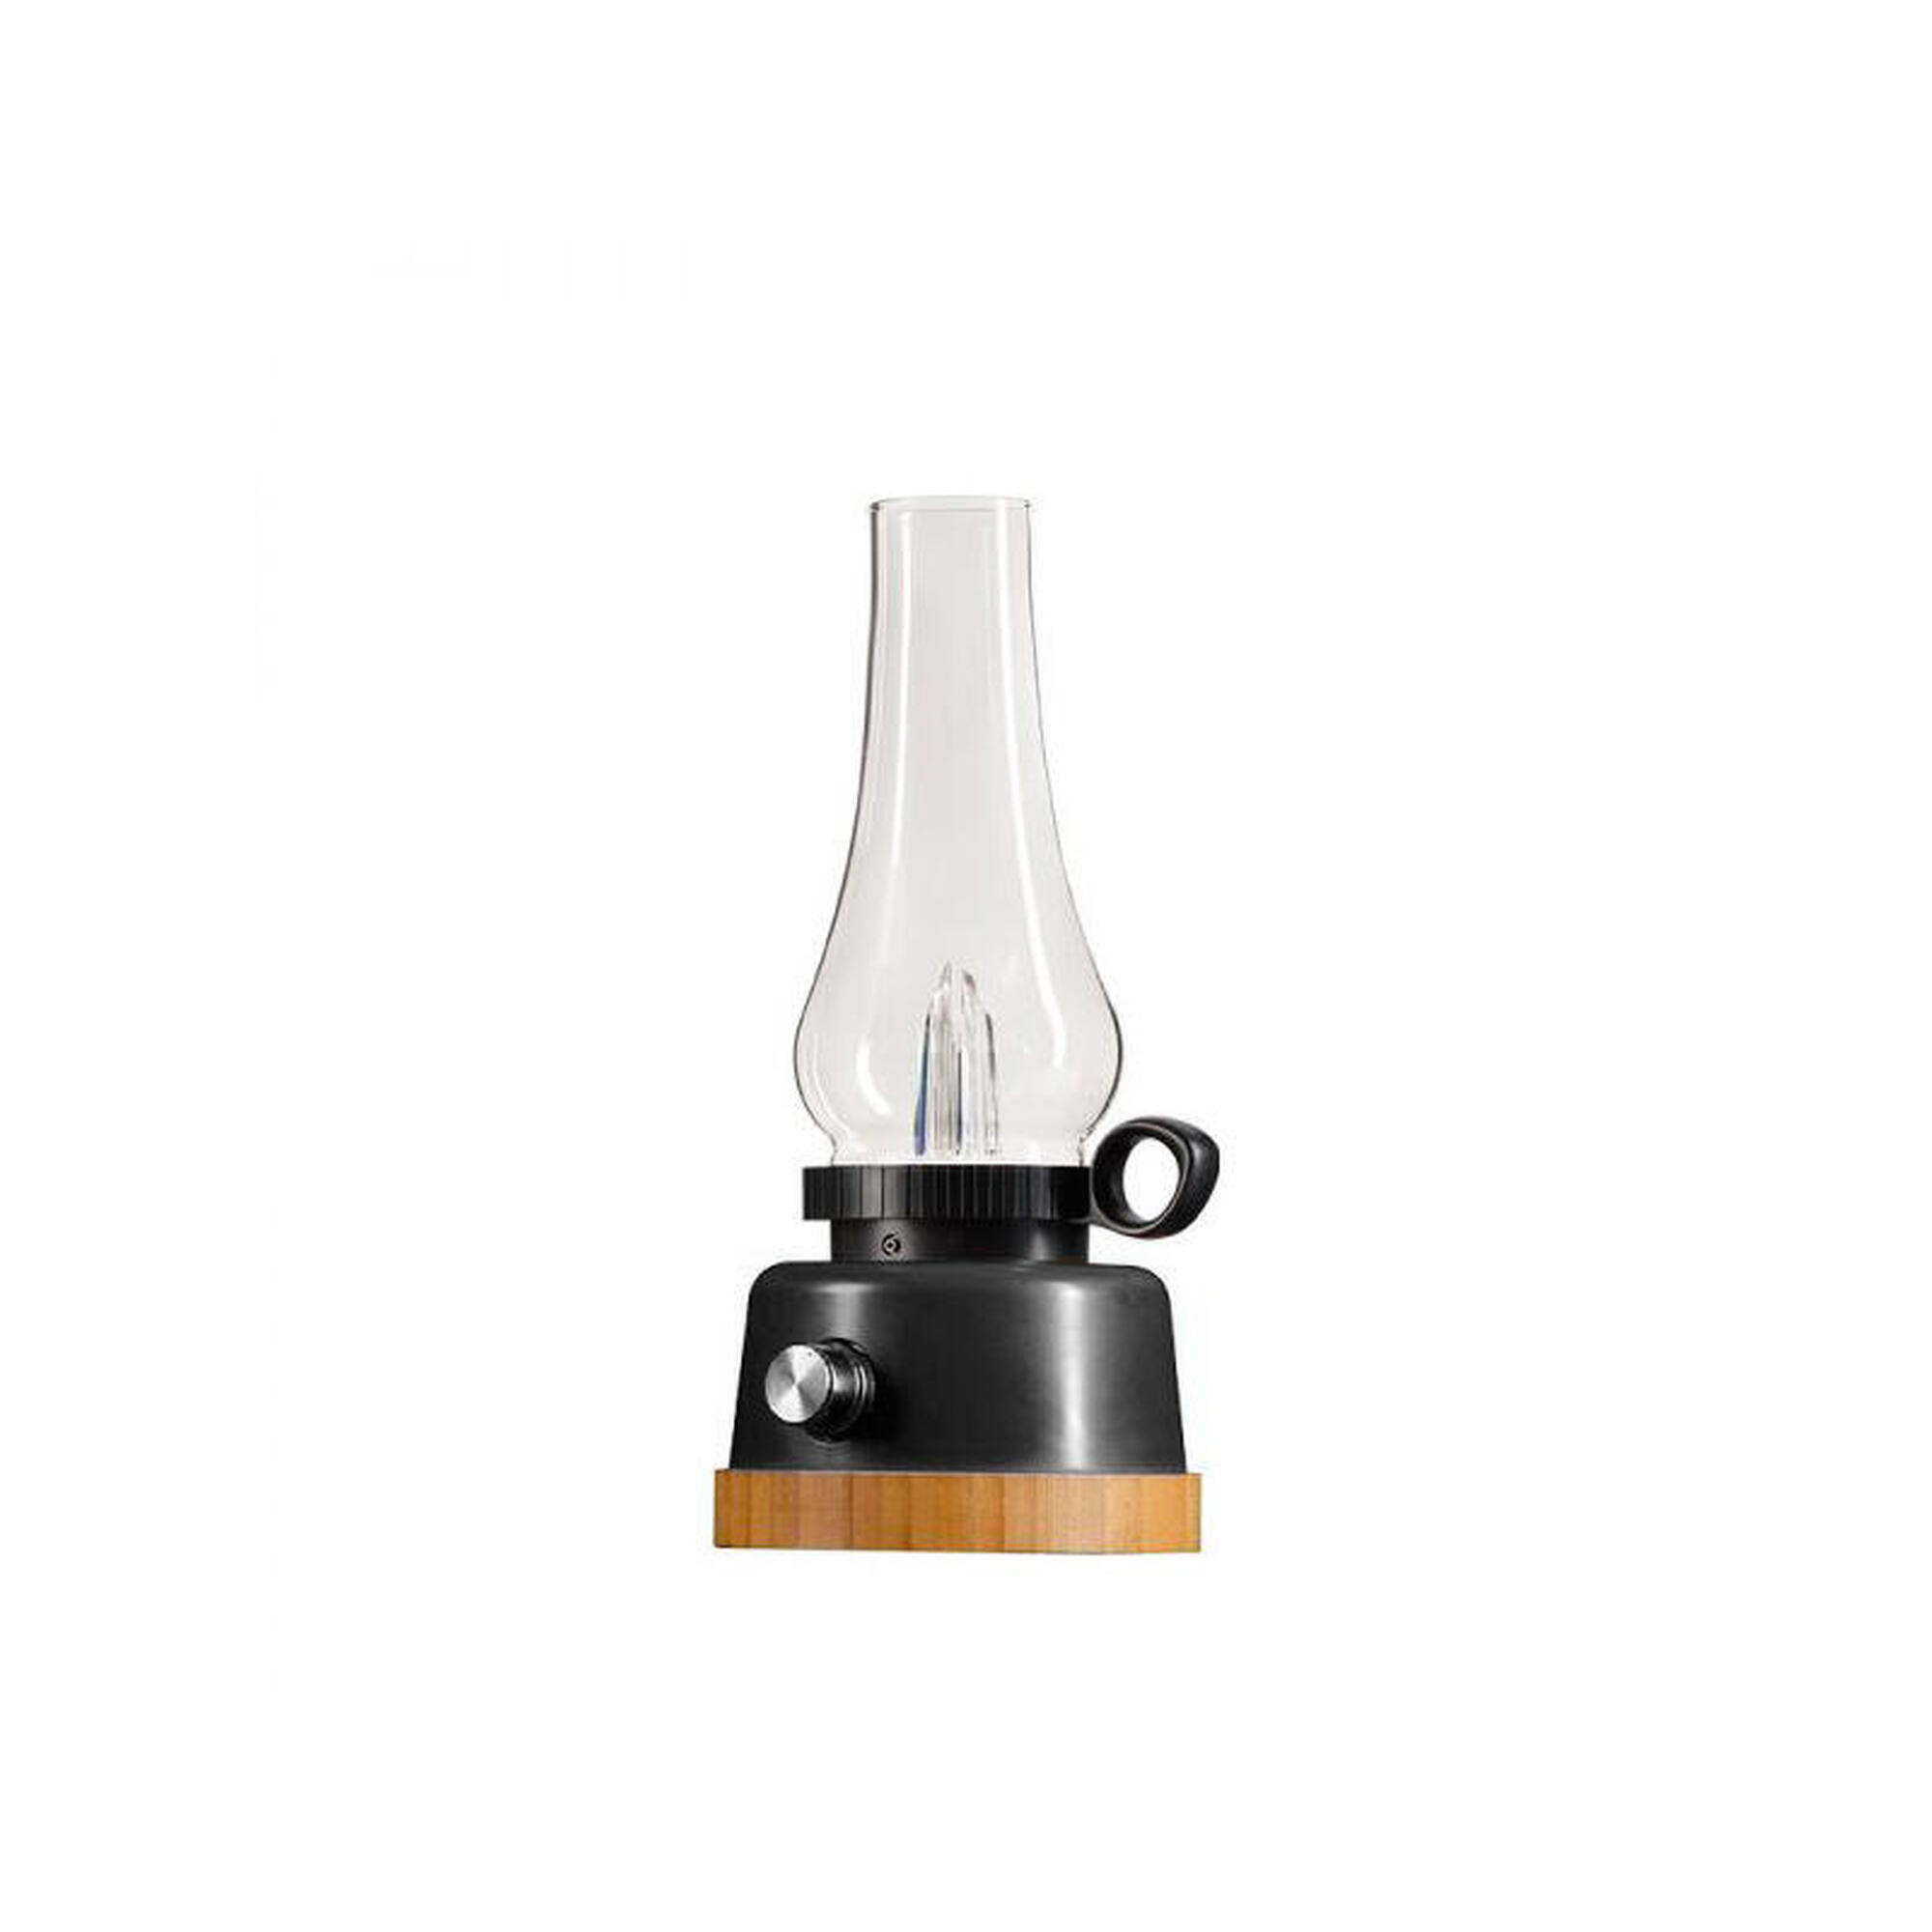 Lâmpada LED Regulável com PowerBank Estilo de Lâmpada a Óleo - 250 lúmens